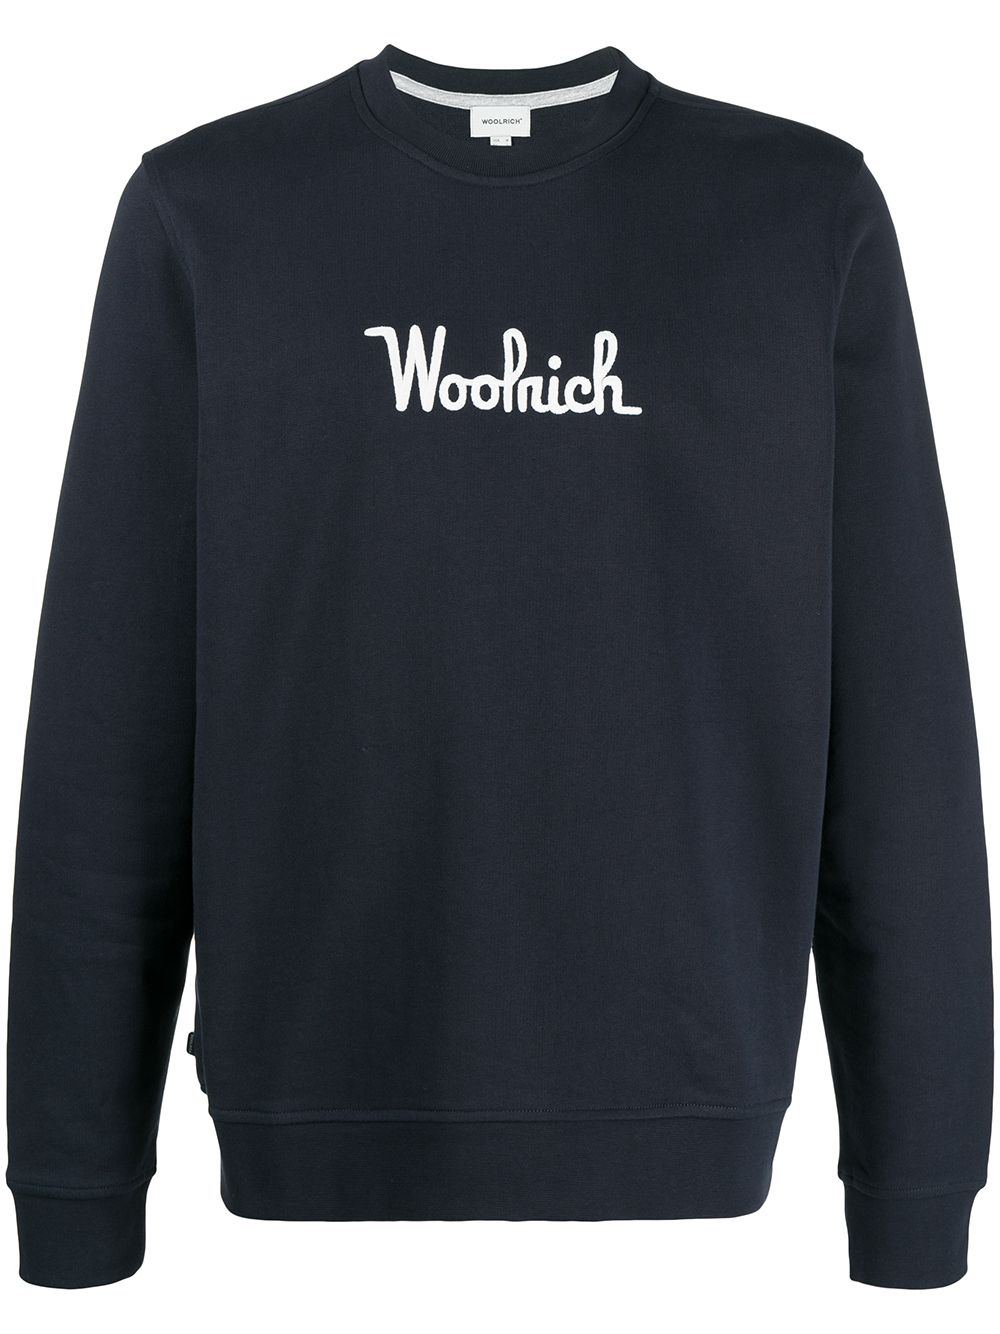 фото Woolrich толстовка с вышитым логотипом